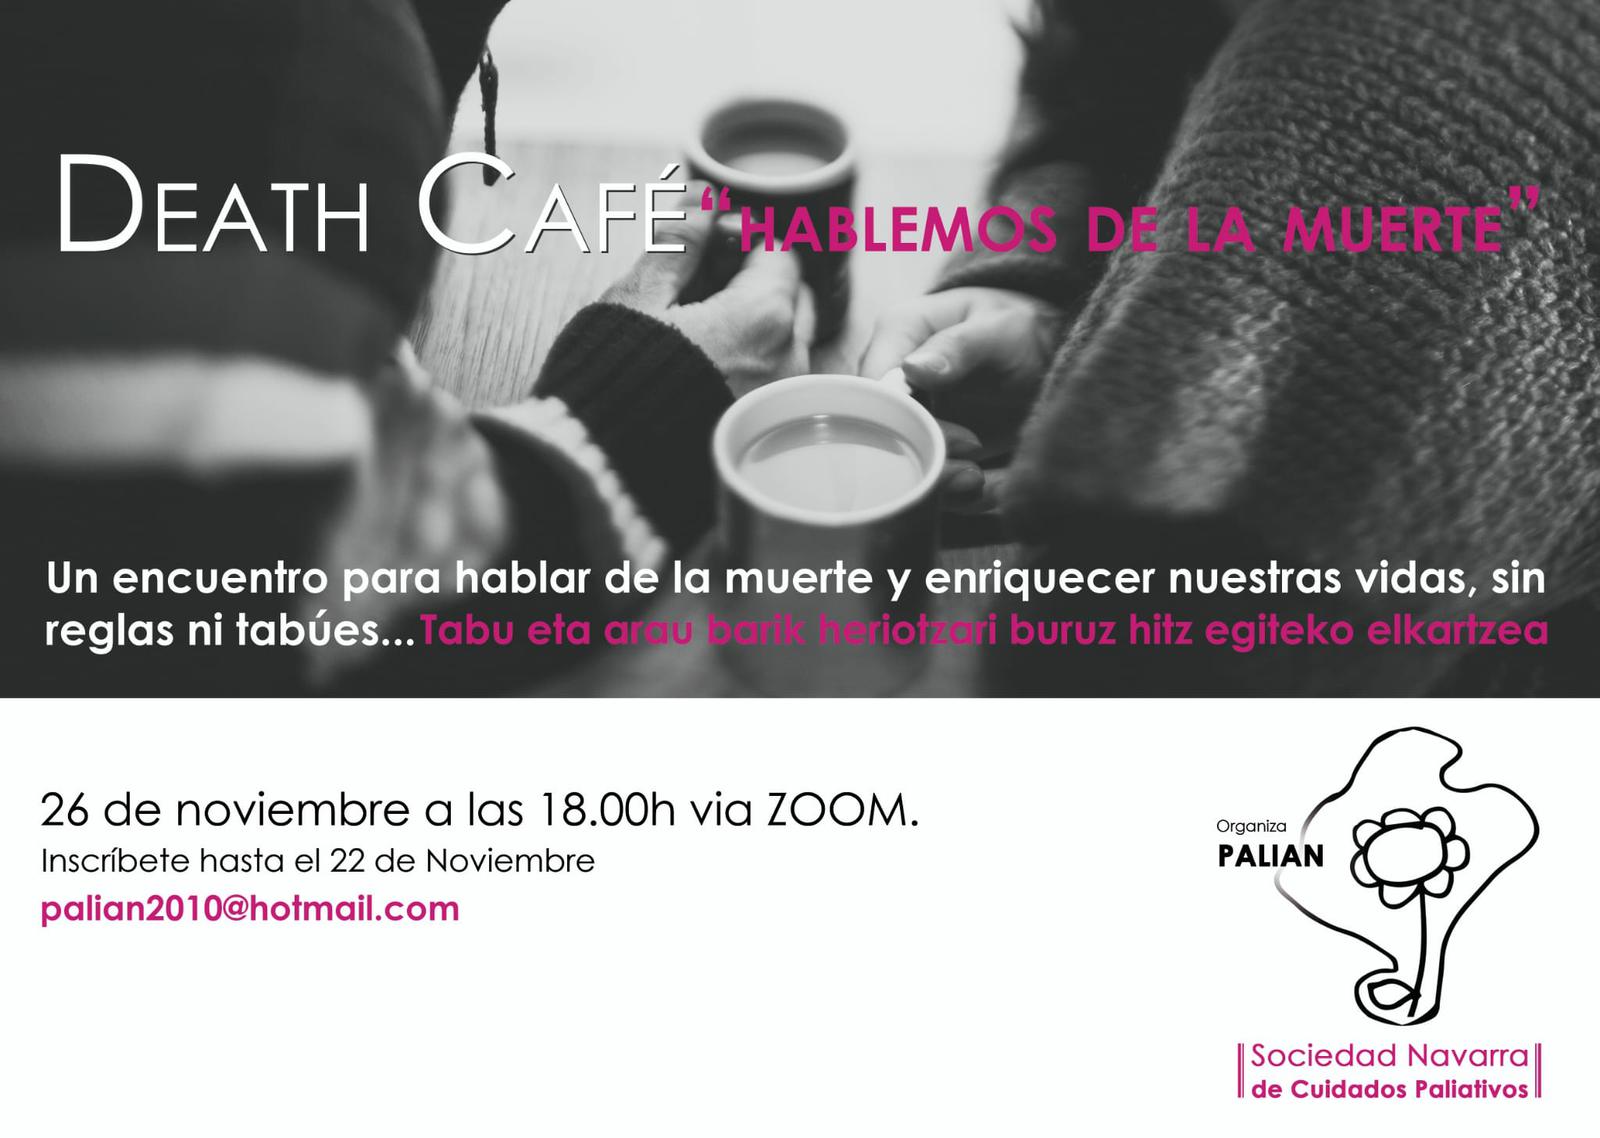 Death Cafe "Hablemos de la muerte"